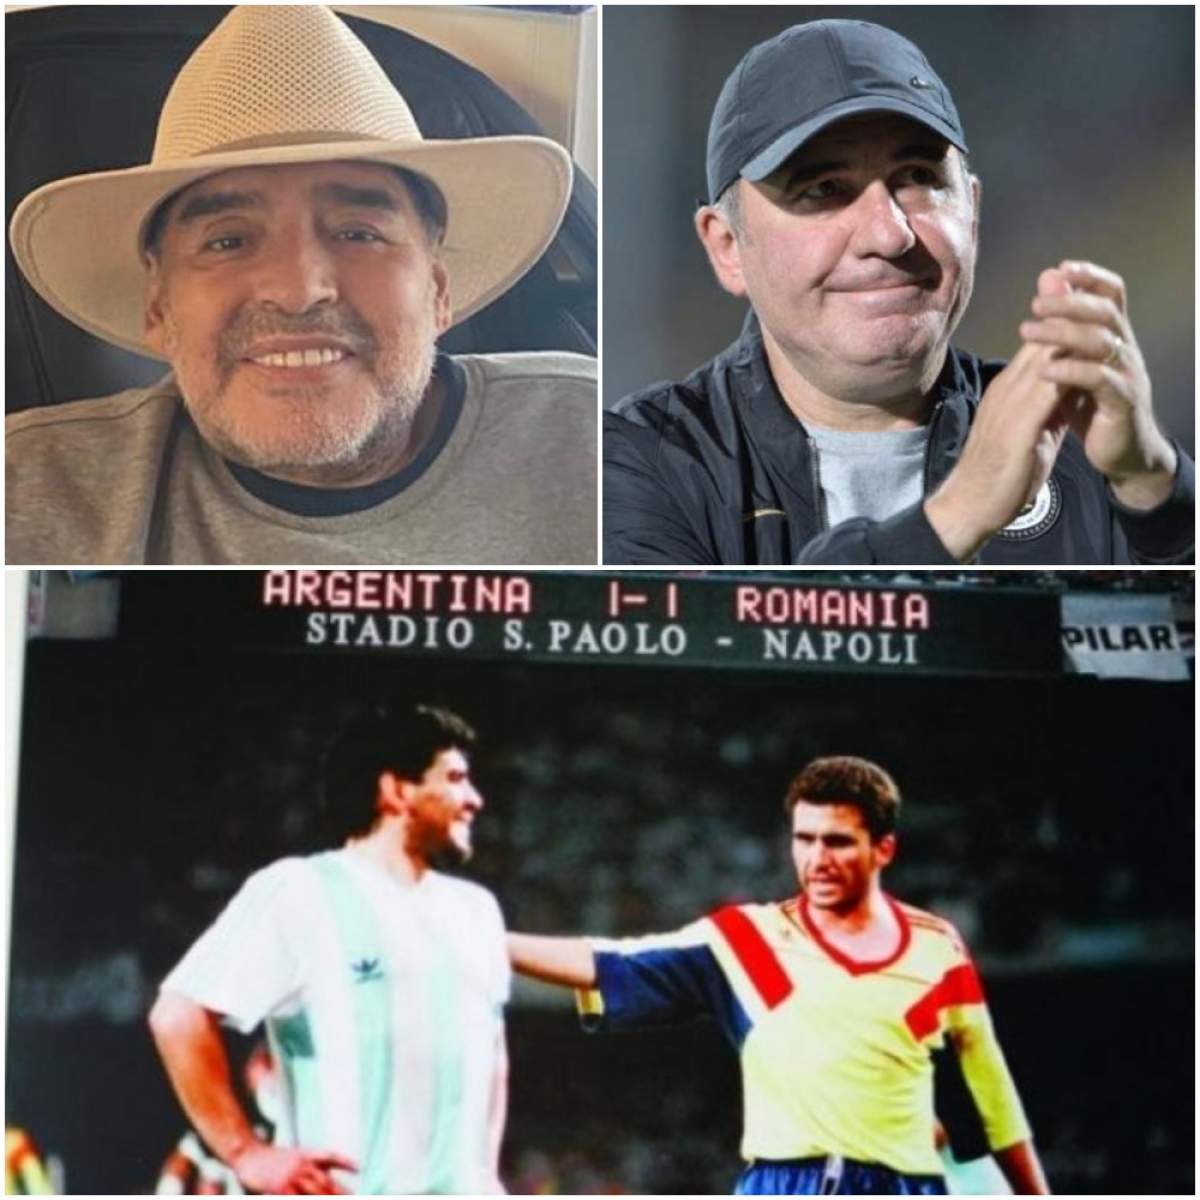 Colaj cu Hagi în timp ce aplauda, Maradona pe vremea în care traia și Hagi și Maradona cand au jucat impreuna.